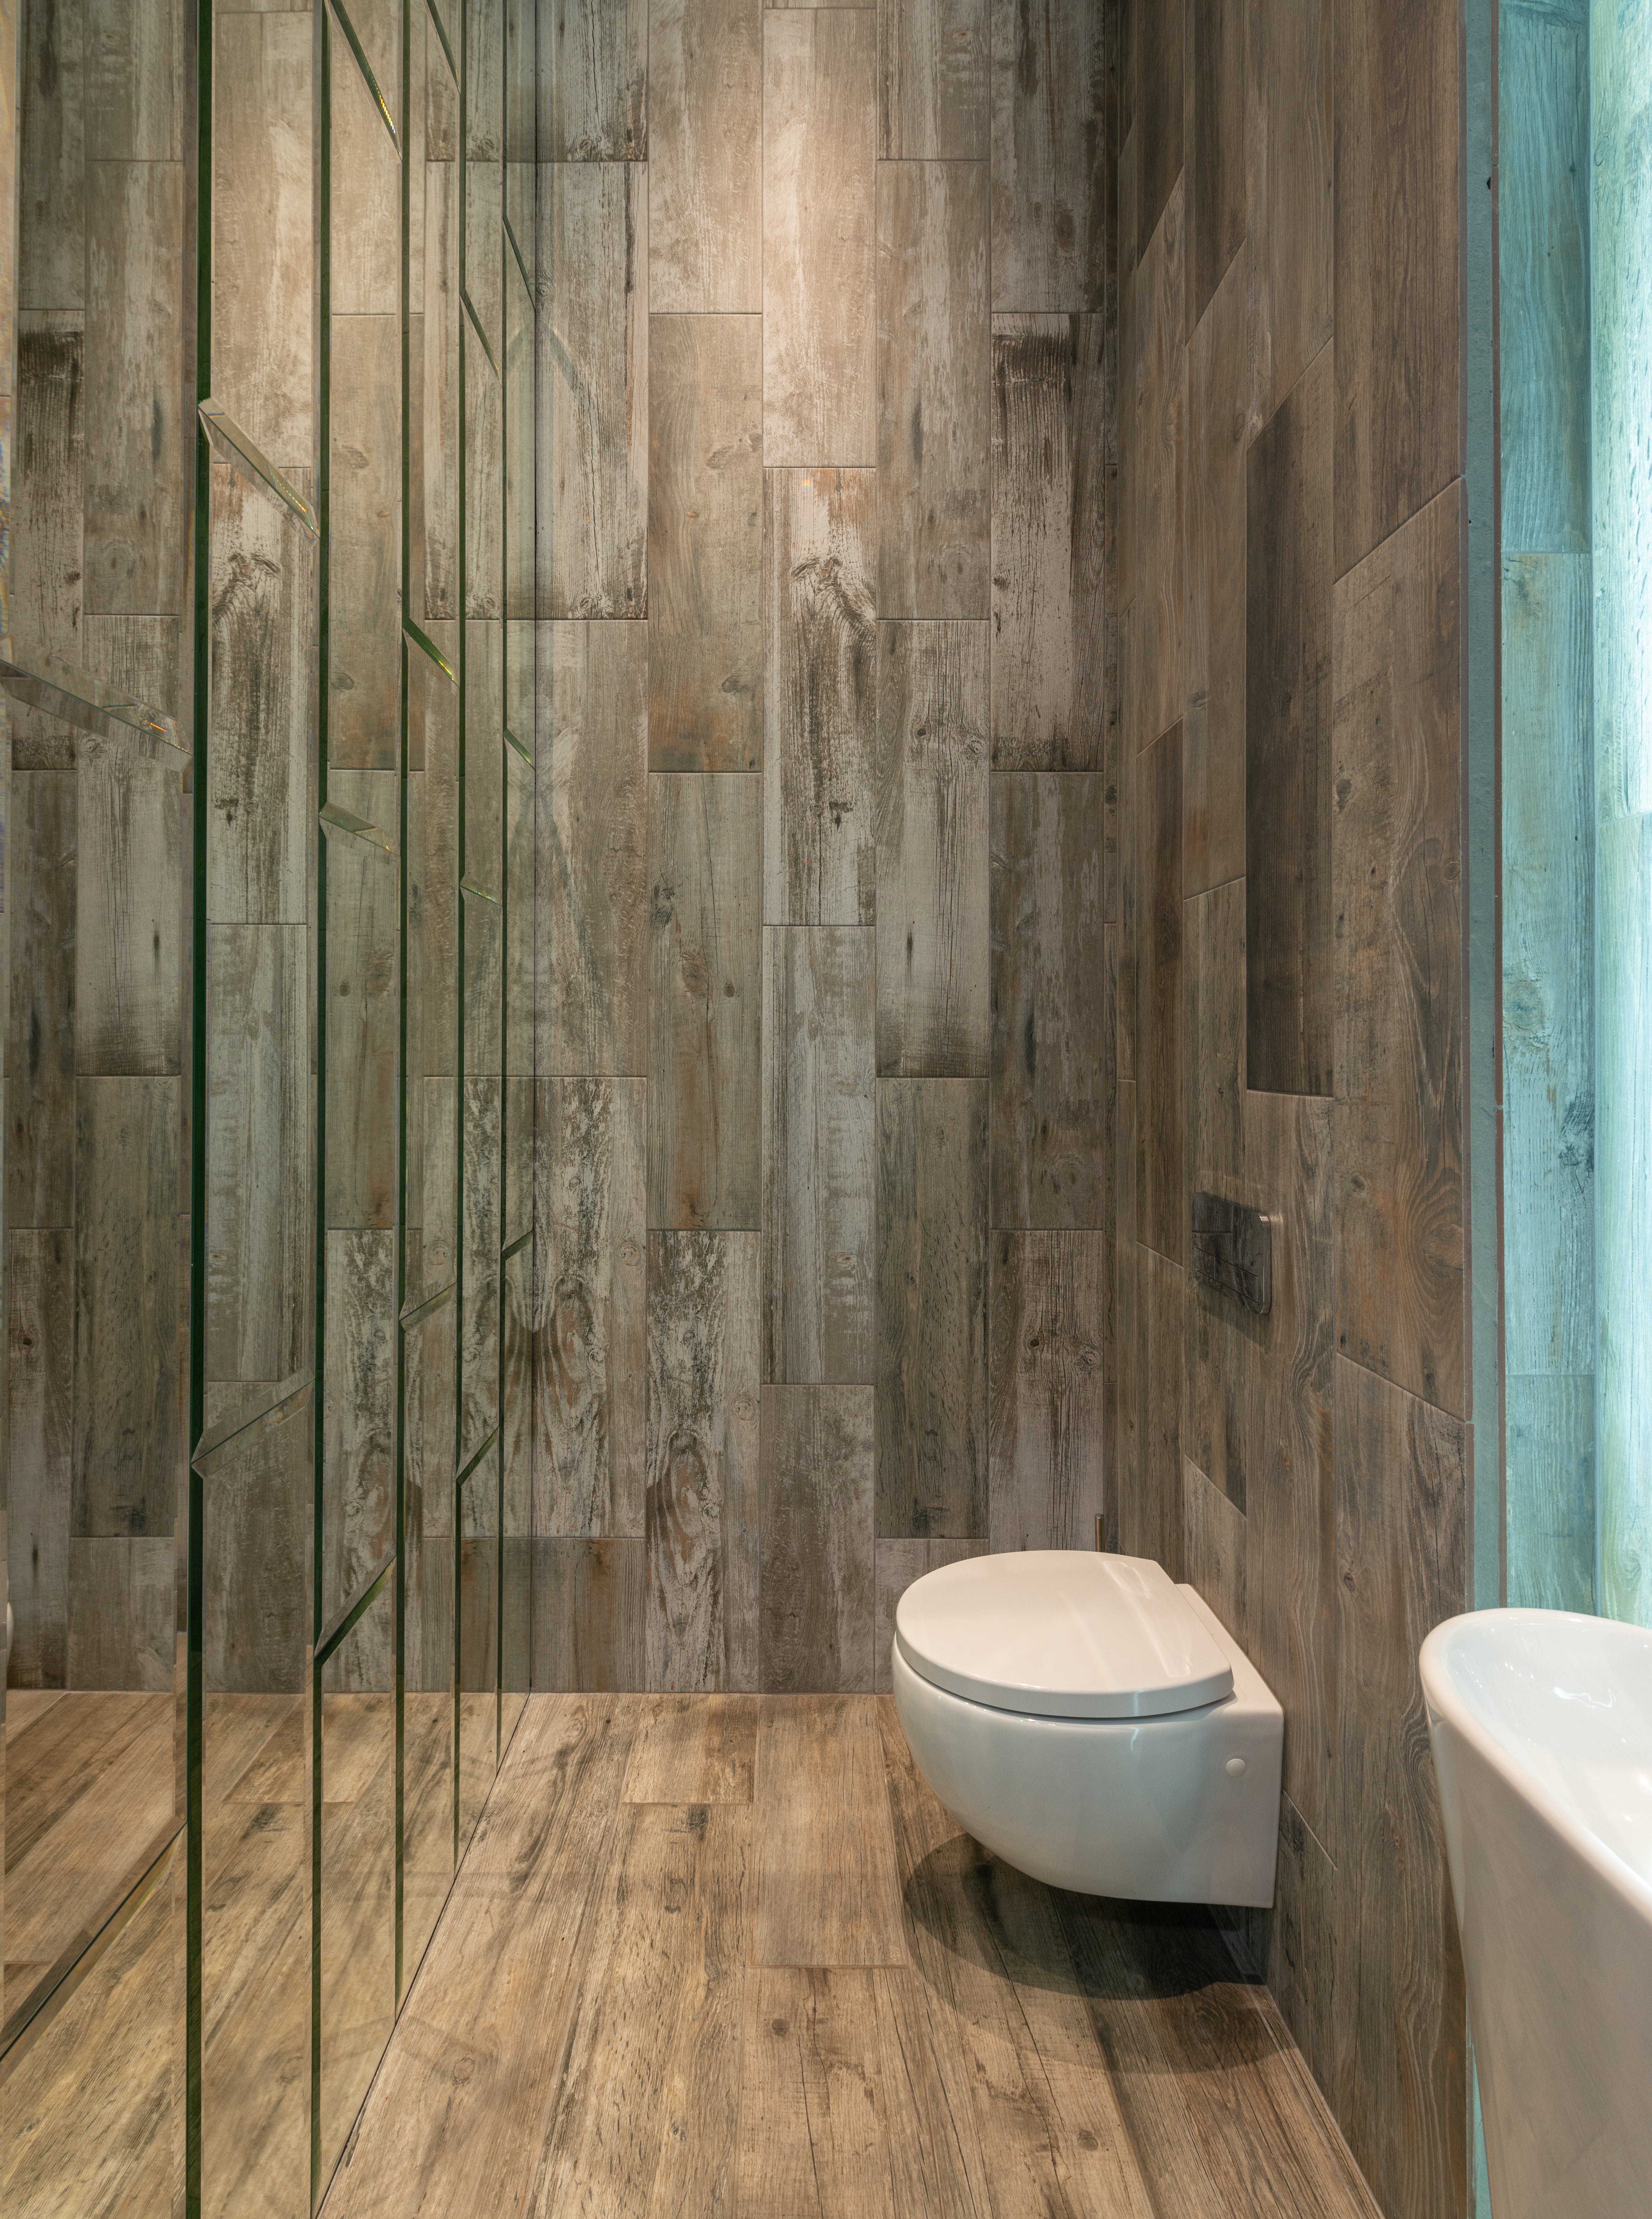 Cuarto de baño moderno con paneles de madera en las paredes. | Fuente: Pexels